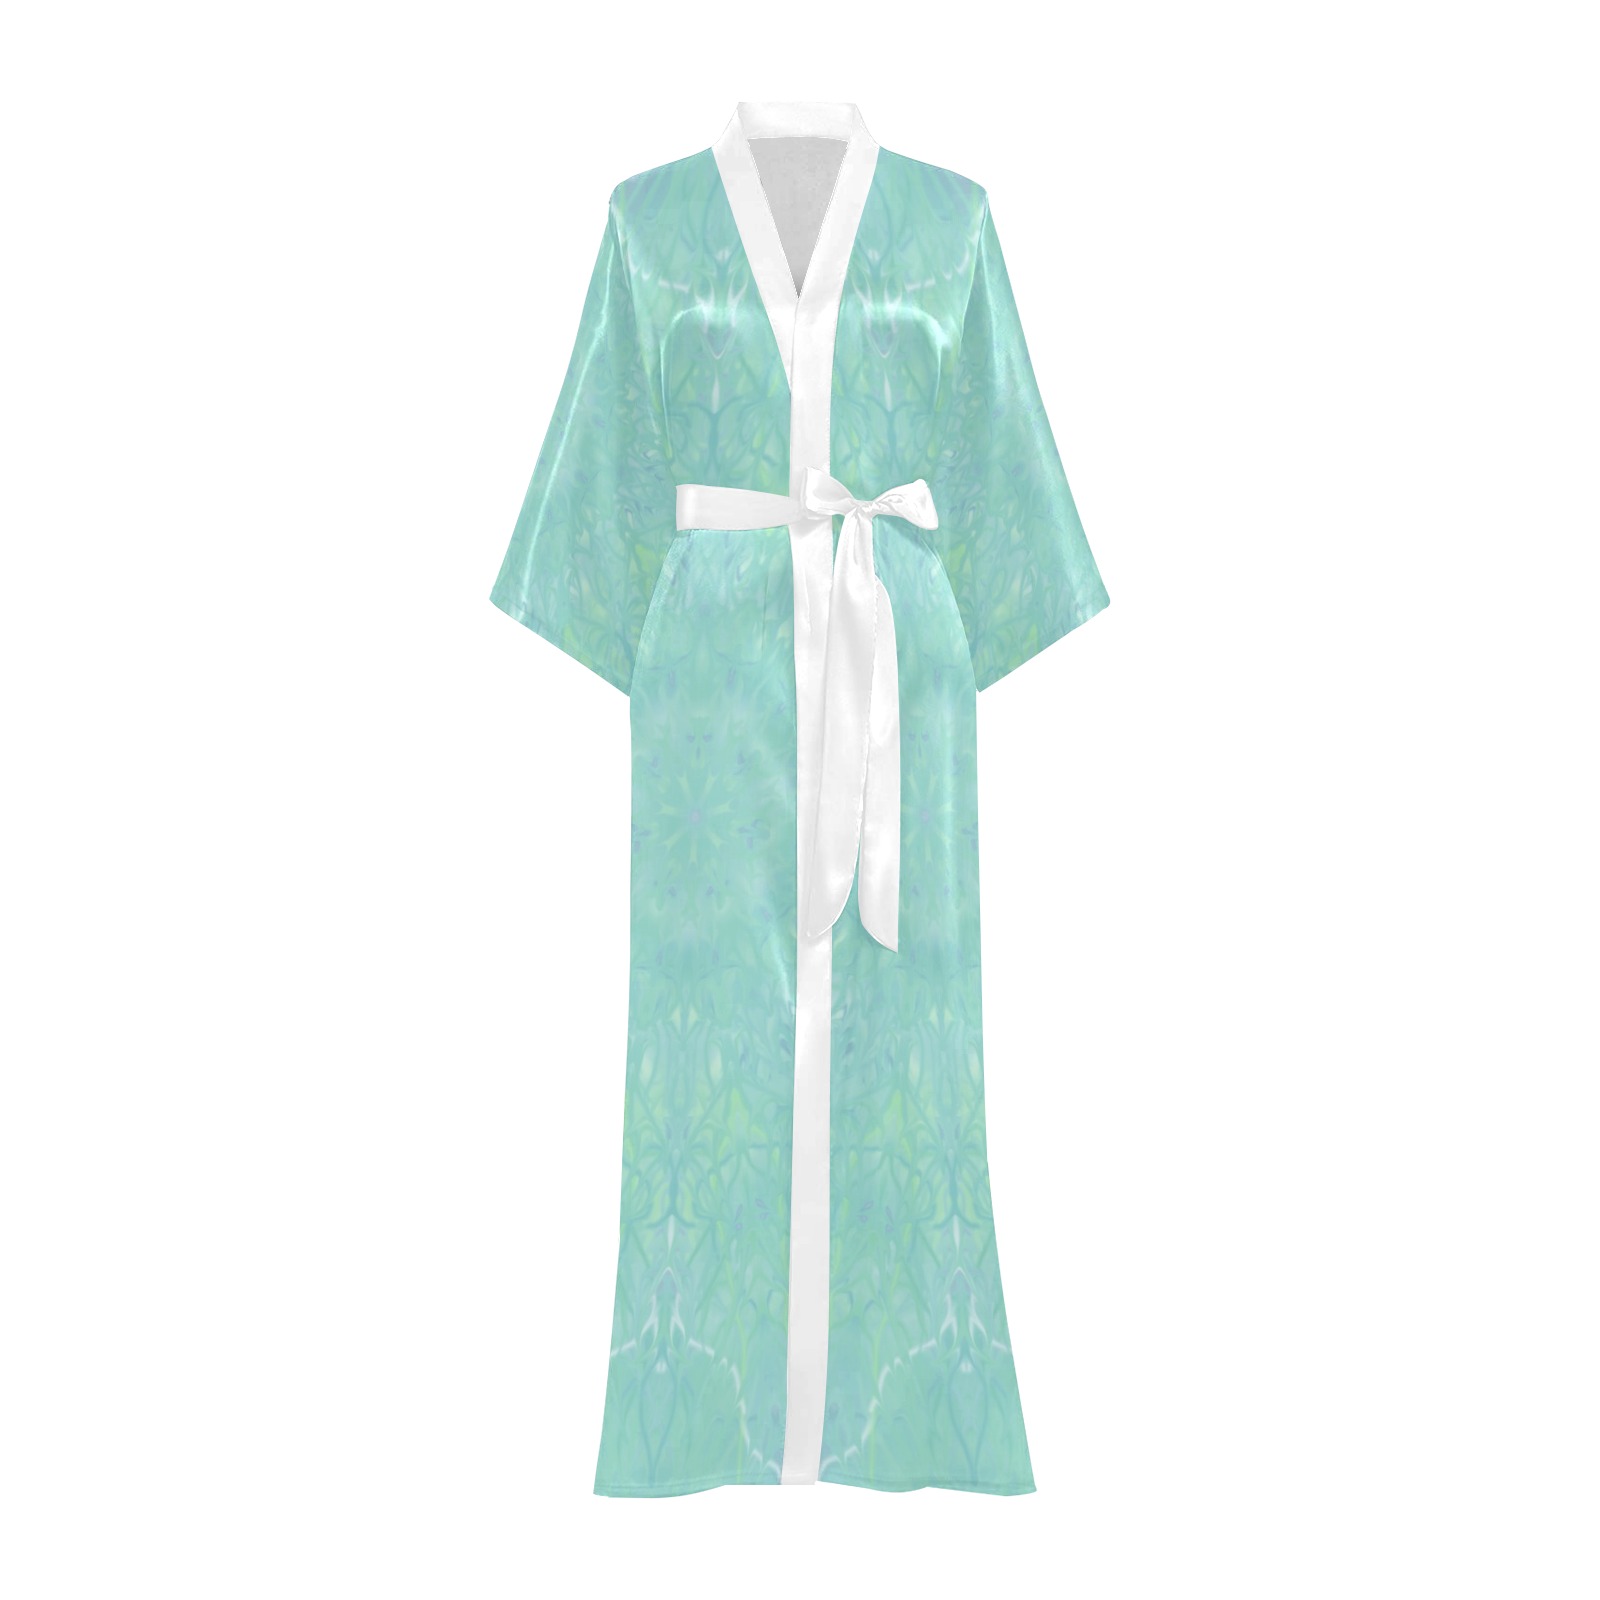 BLUE 45x65- 7 Long Kimono Robe